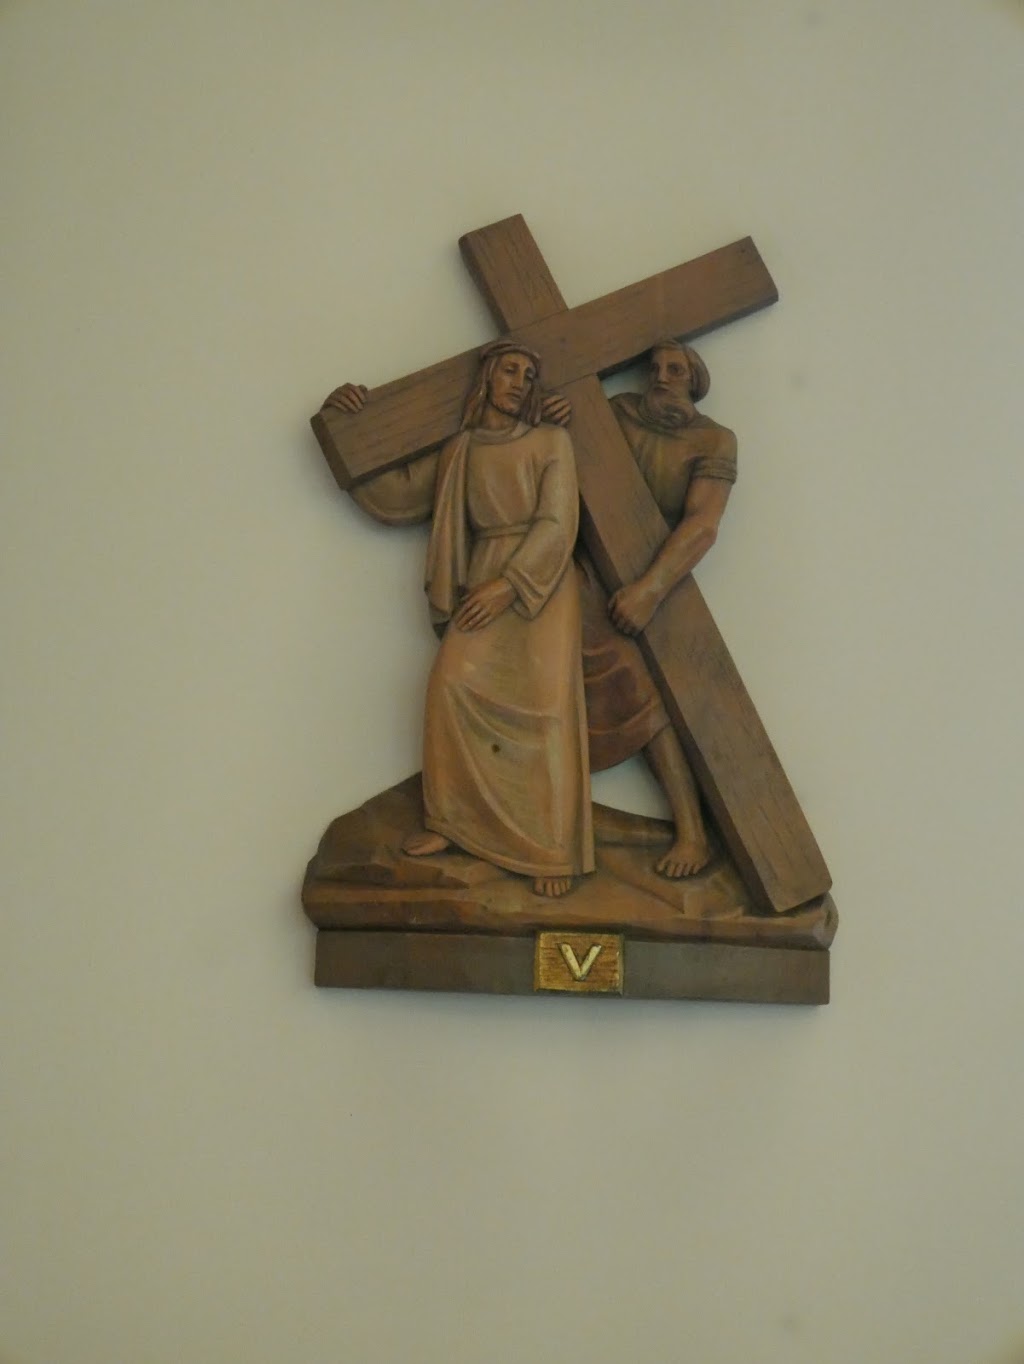 St Pius X Catholic Church | 2950 Ilger Ave, Toledo, OH 43606 | Phone: (419) 535-7672